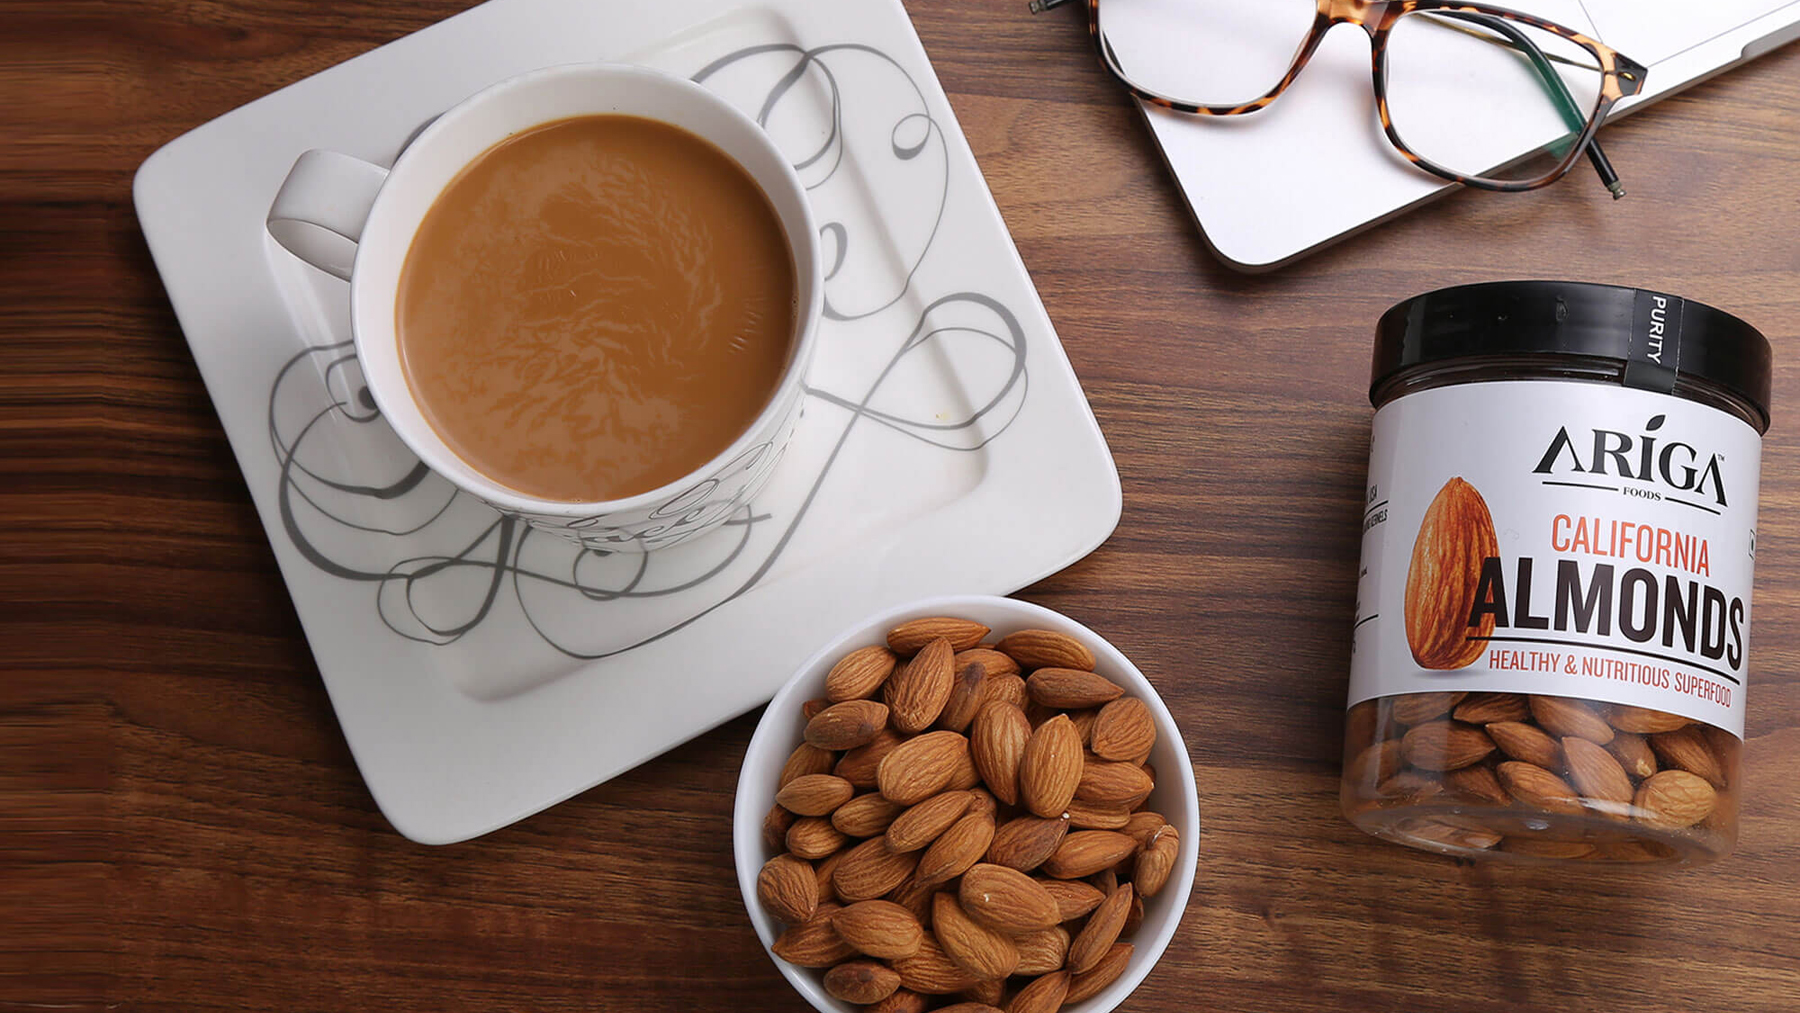 ariga-almonds-label-design